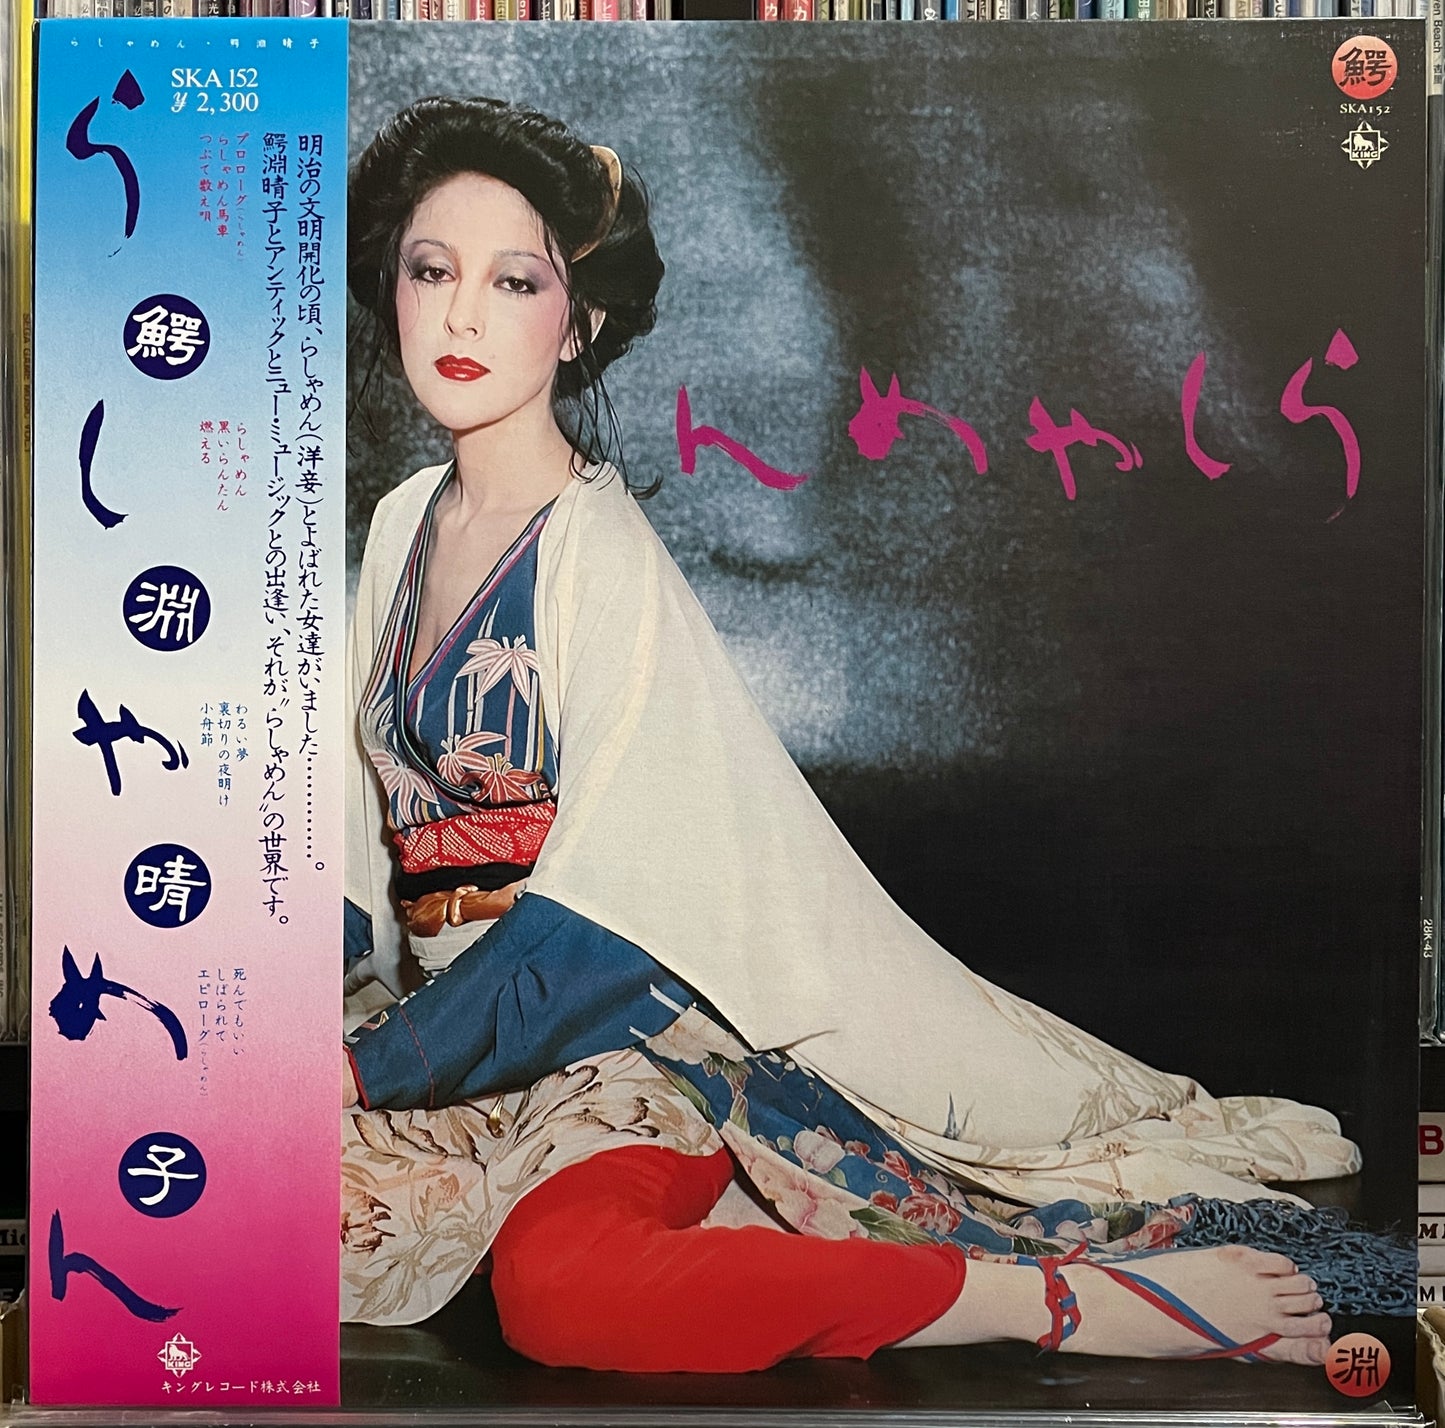 Haruko Wanibuchi "らしゃめん" (1976)